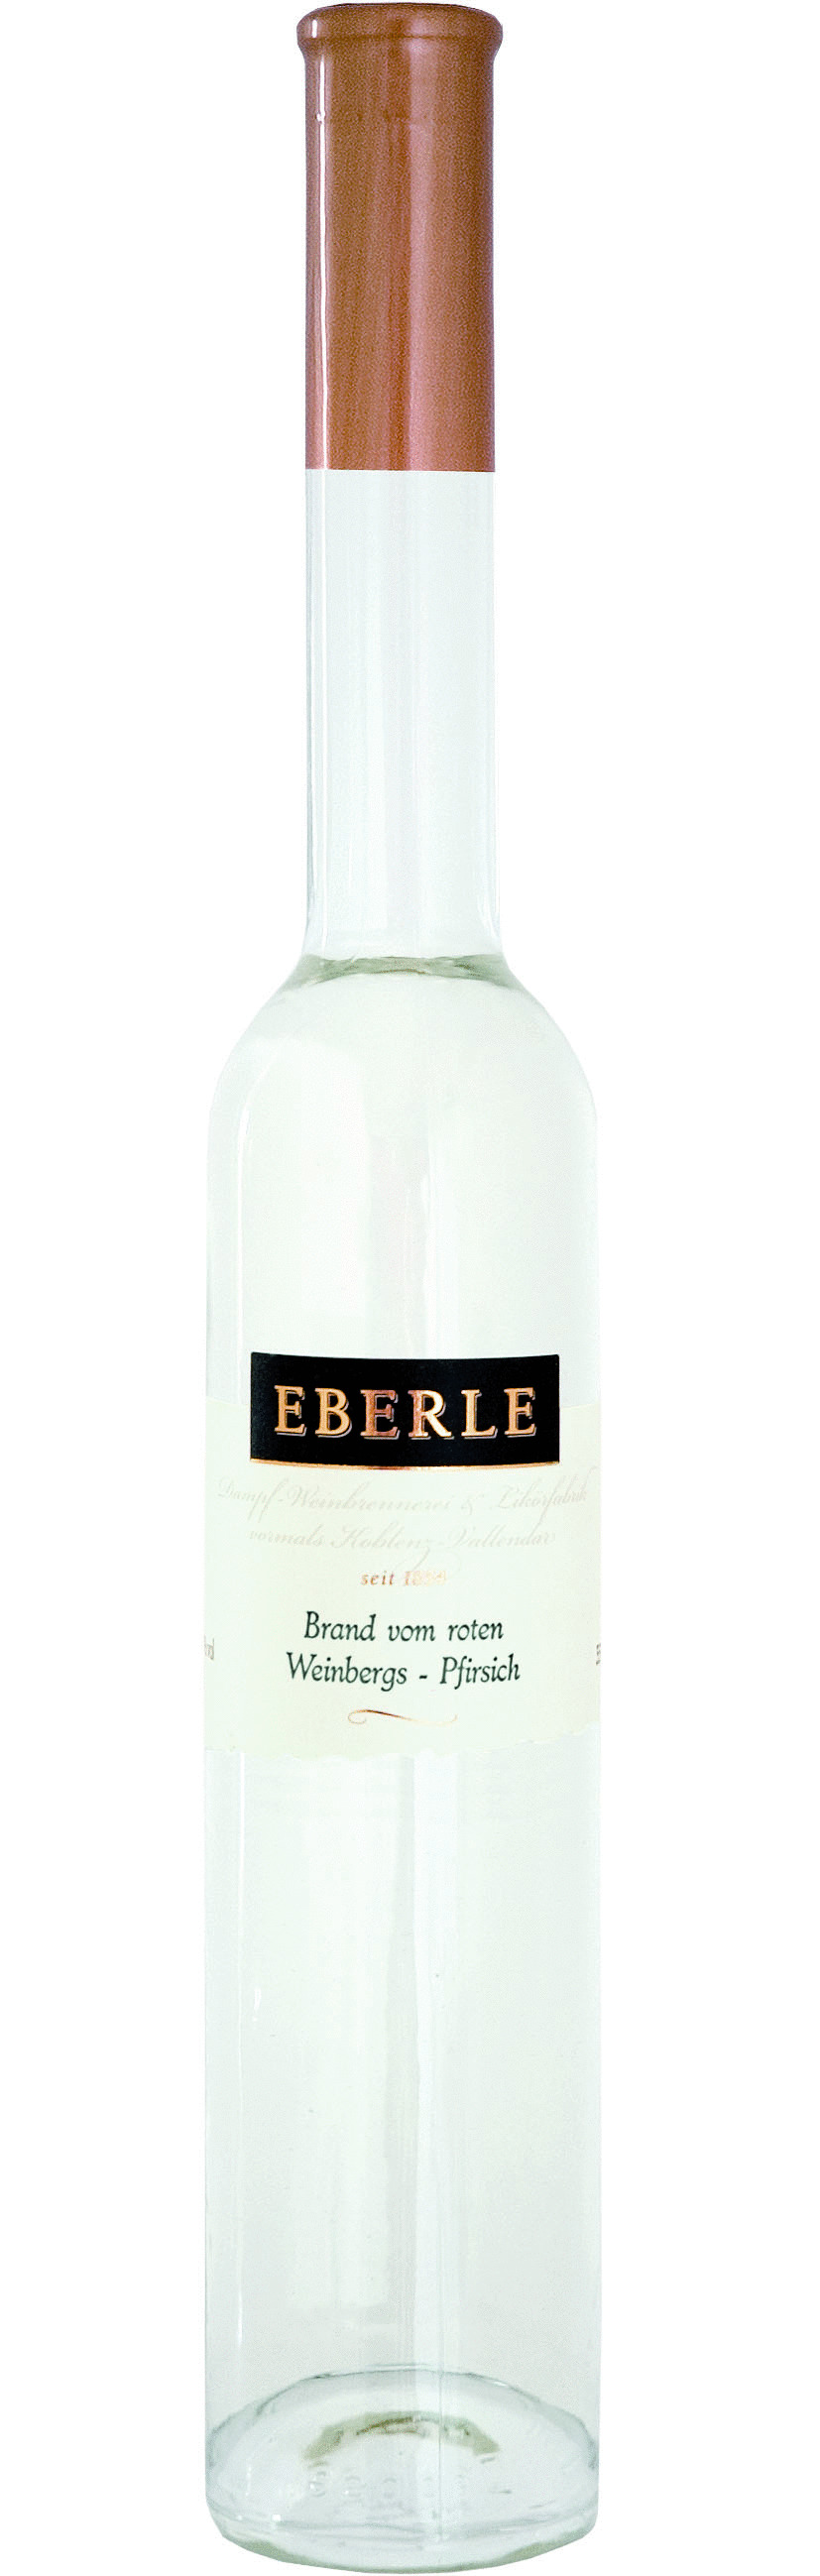 Eberle Brand vom roten Weinbergs-Pfirsich 0,35 L. nur 13,90 Euro Bestseller im Norden